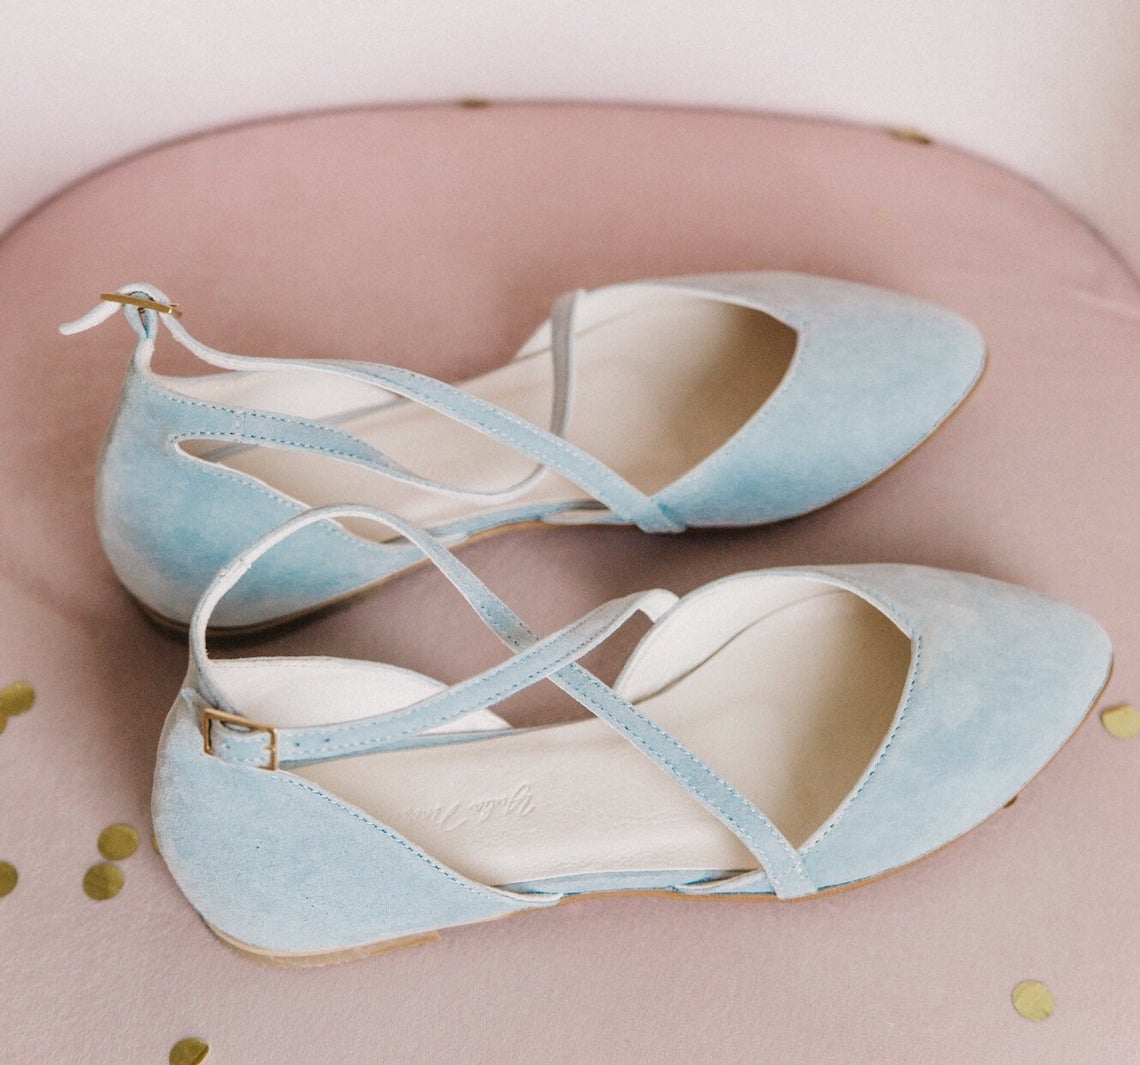 Yulia Nadeeva Blue Bridal Flats Best Blue Bridal Shoes Heels Booties Sandals Flats for Your Something Blue Wedding Bridal Musings - 22 Đôi giày cô dâu màu xanh lam cho 'Thứ gì đó màu xanh lam' của bạn